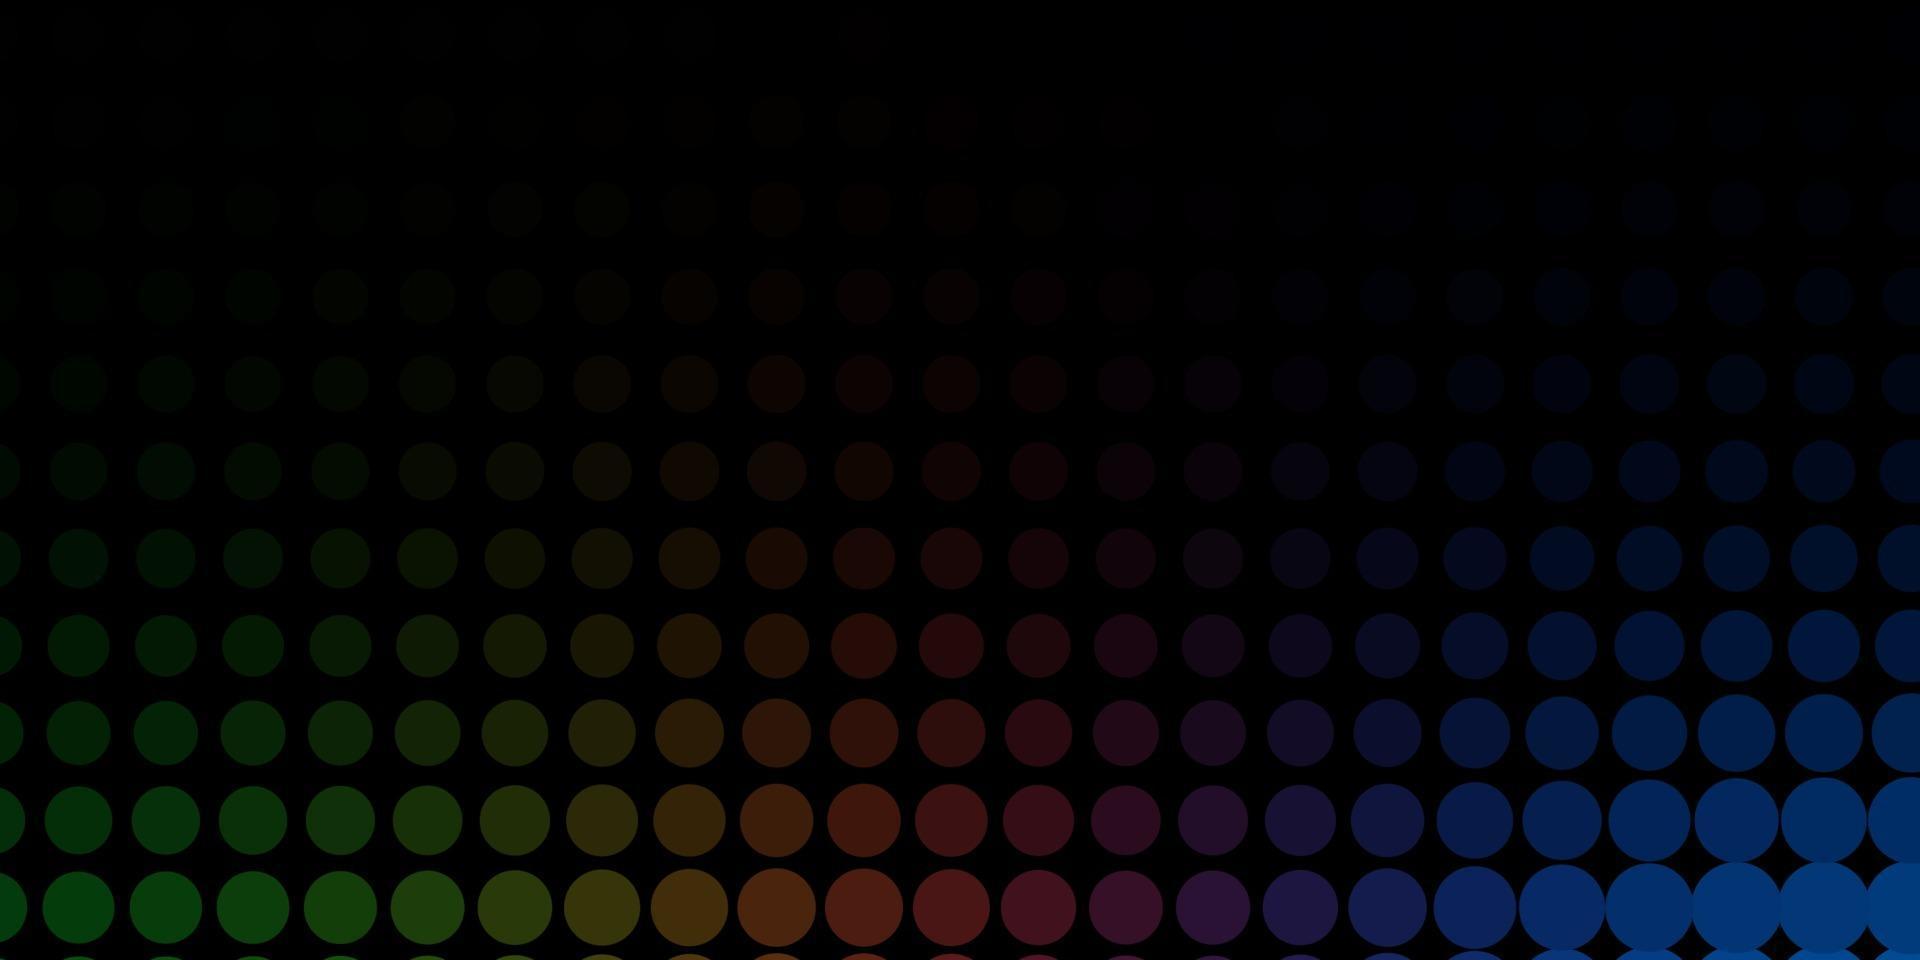 mise en page de vecteur multicolore sombre avec des formes de cercle.